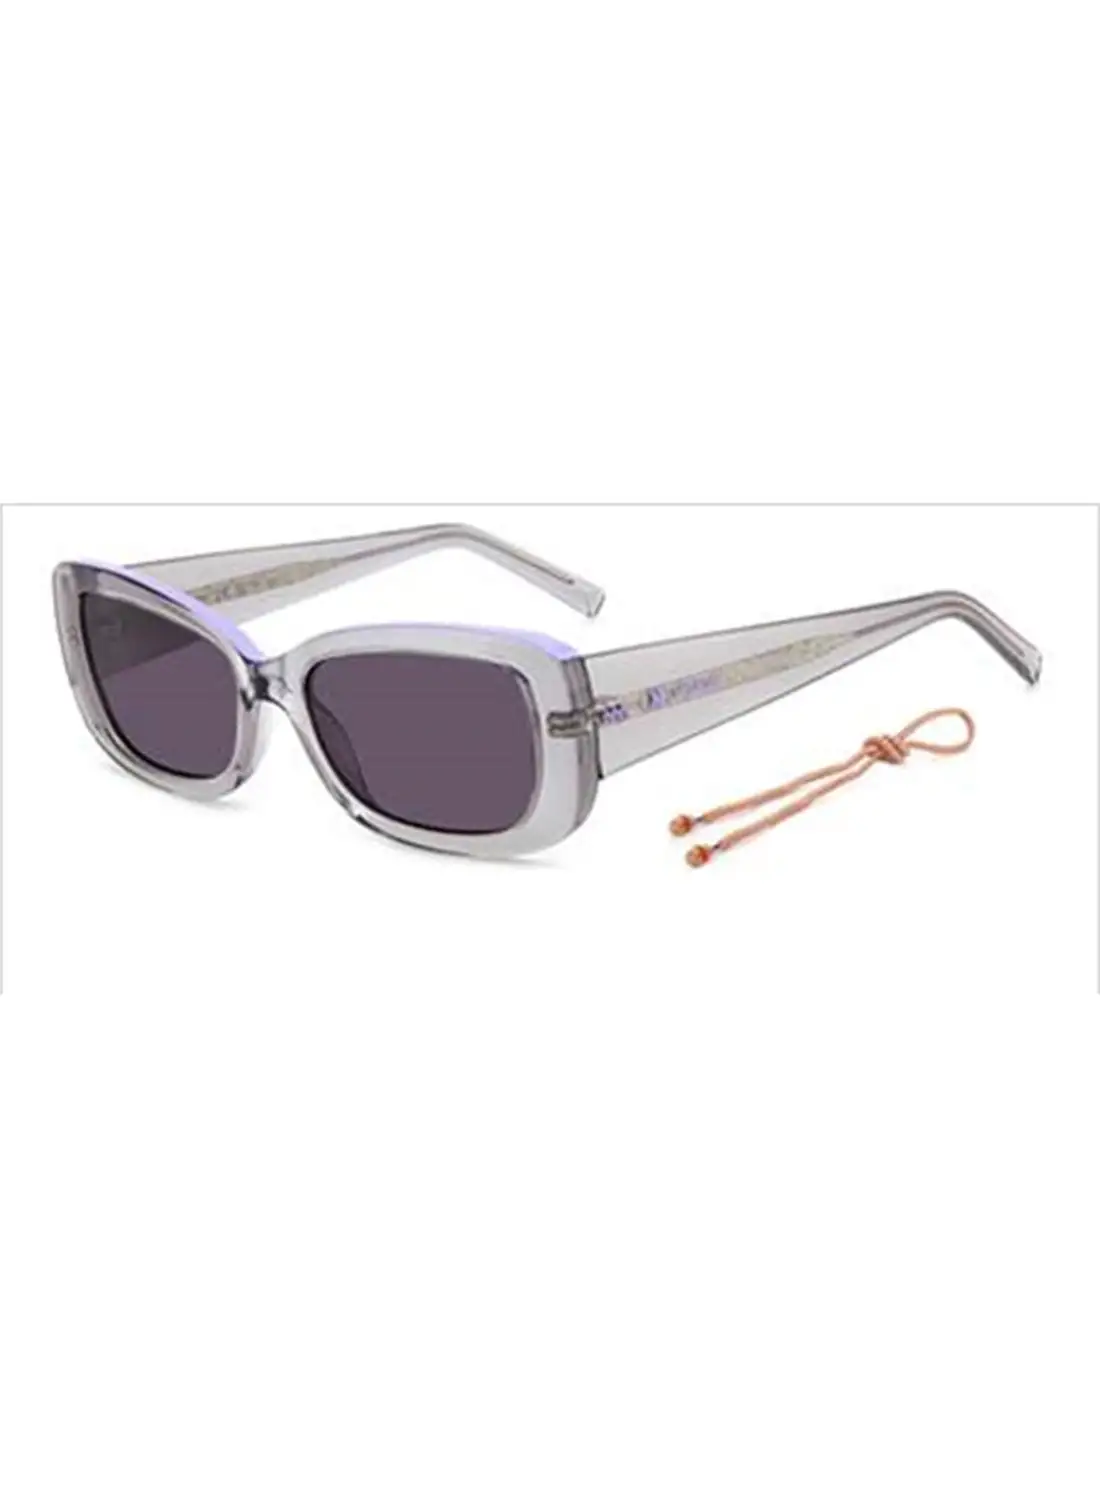 M MISSONI نظارة شمسية مستطيلة للنساء للحماية من الأشعة فوق البنفسجية - Mmi 0152/S Gray 17 - مقاس العدسة: 34.5 ملم